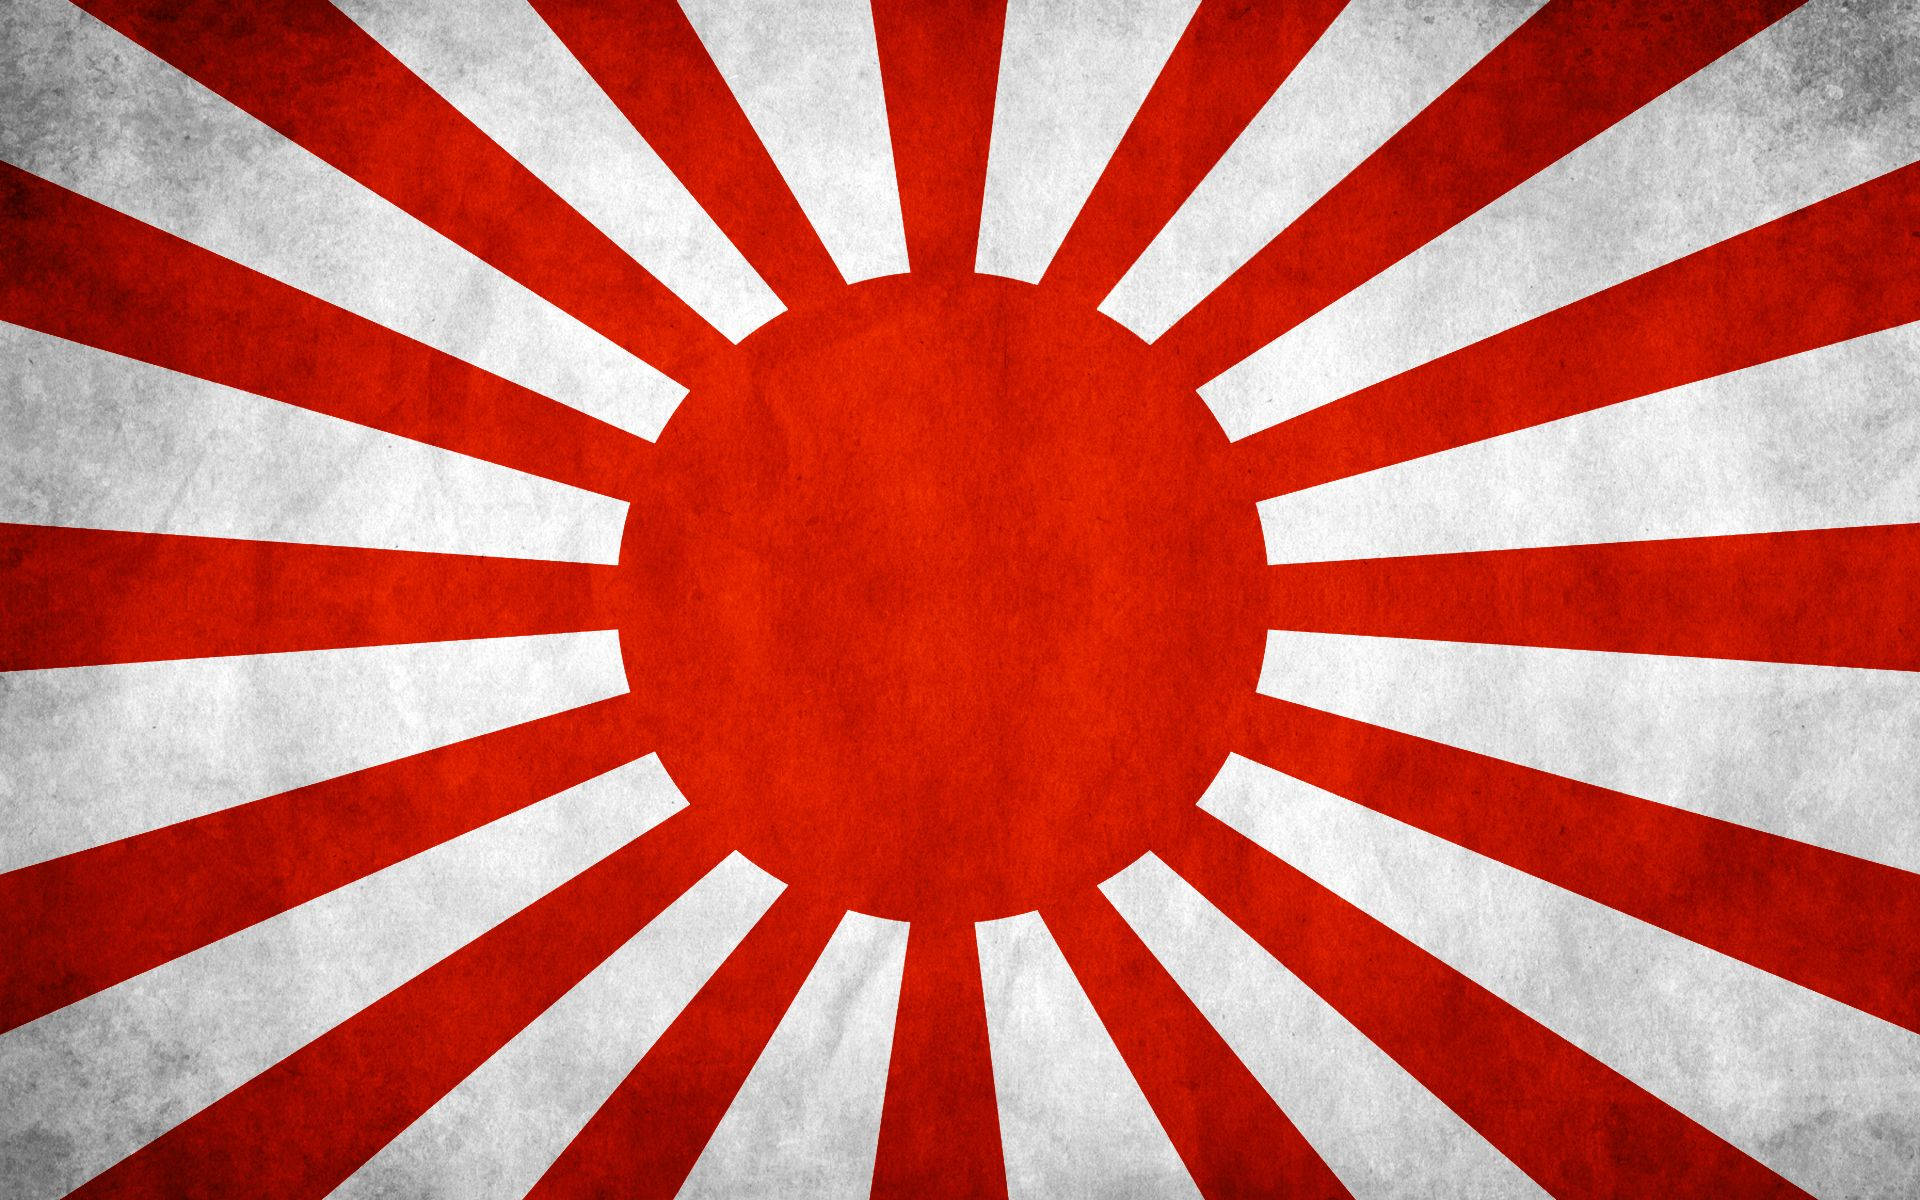 Solnaciente Sobre La Bandera De Japón Fondo de pantalla